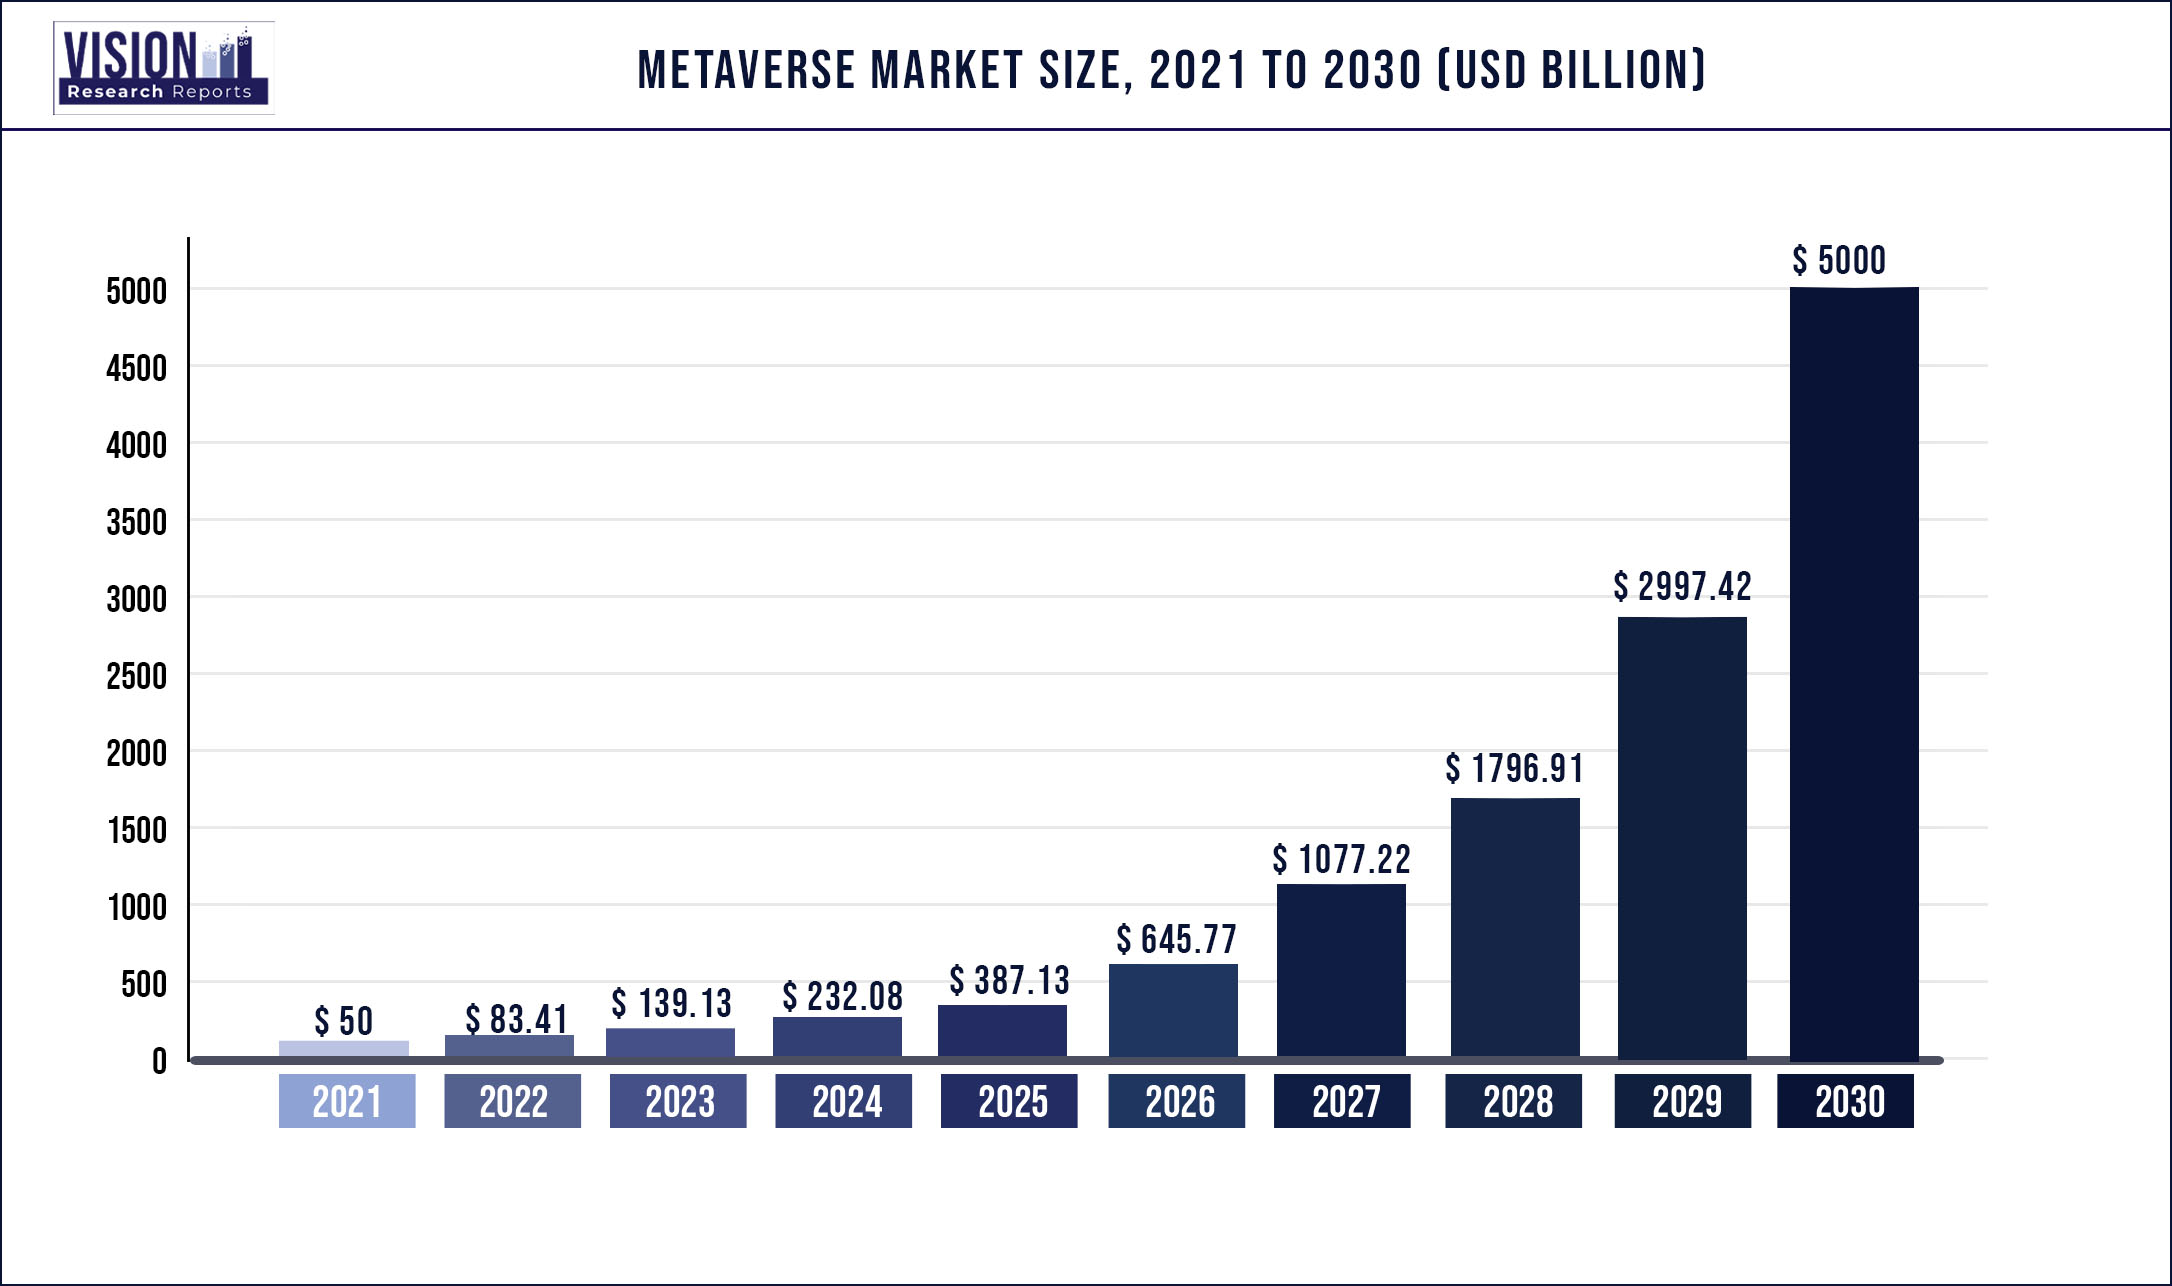 Metaverse Market Size 2021 to 2030